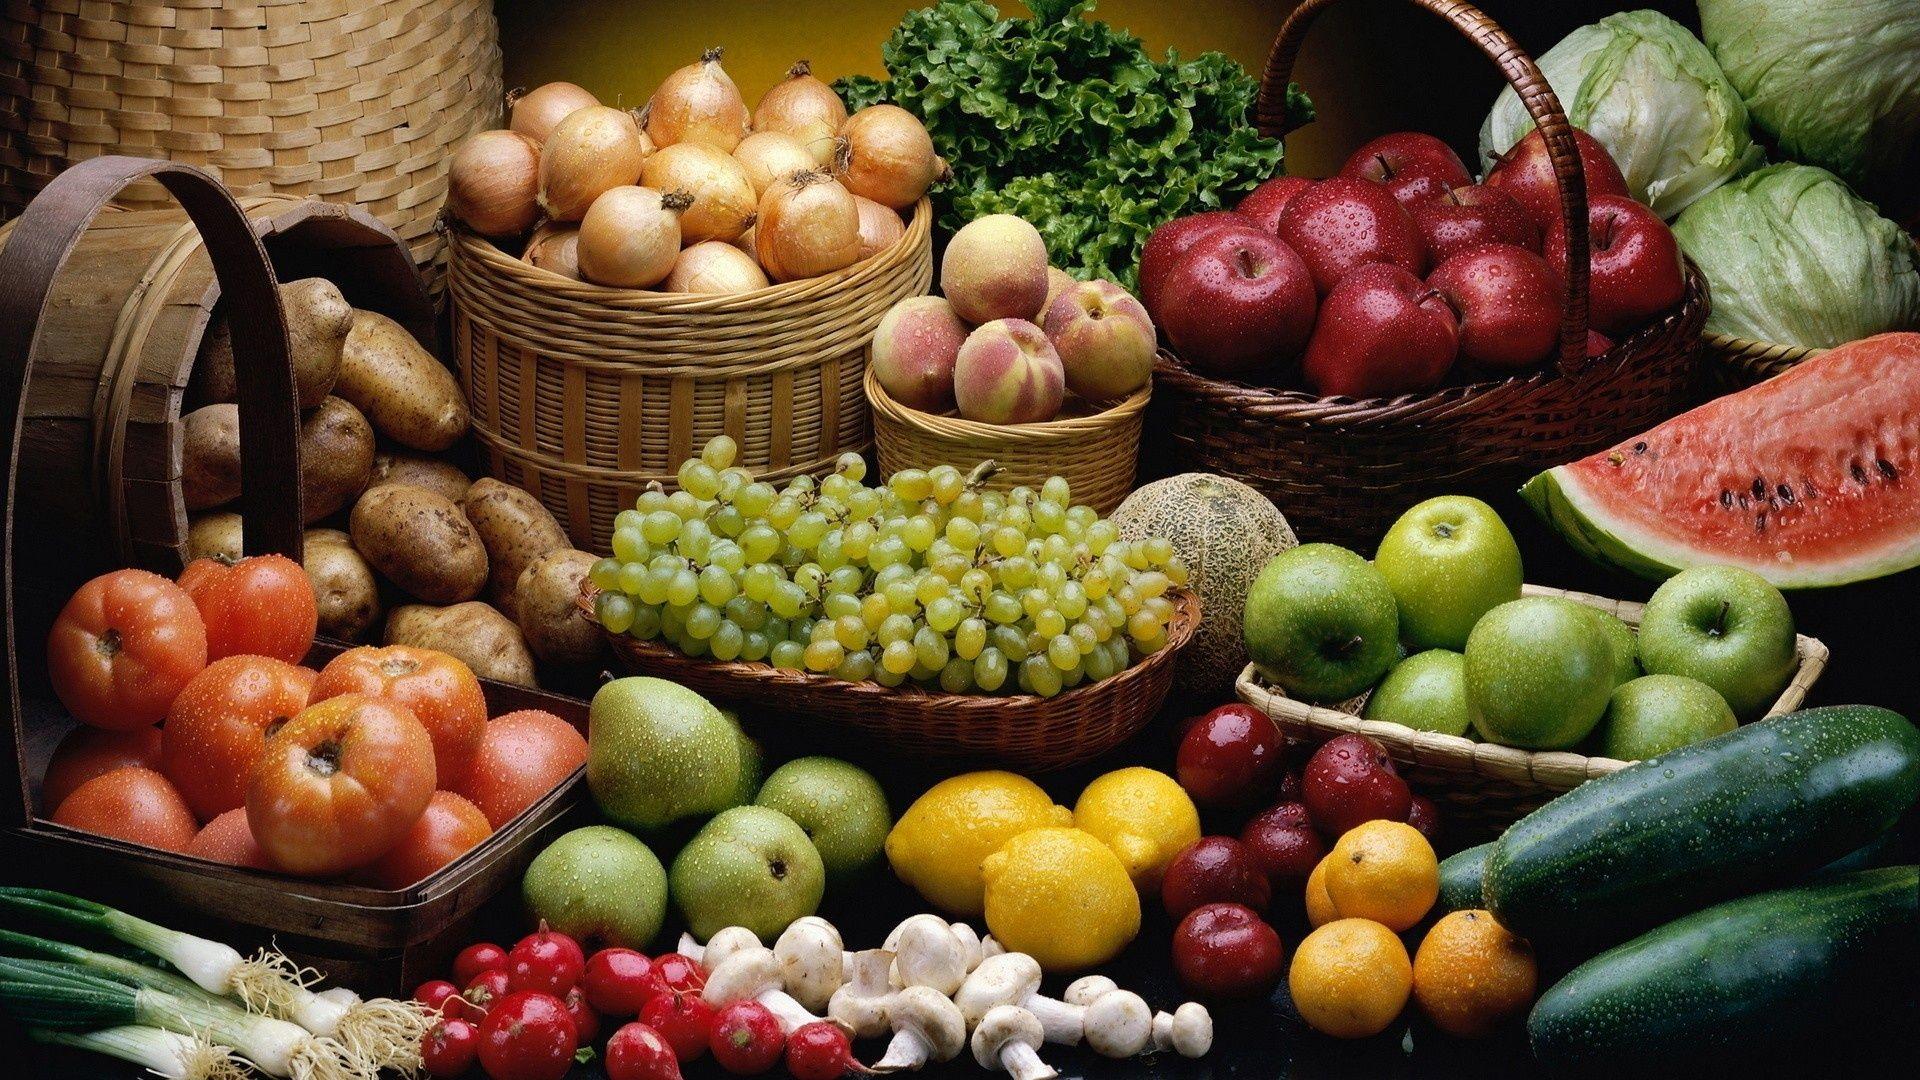   400 مليون دولار إجمالى صادرات الإسماعيلية إلى الخارج من الخضروات و الفاكهة خلال عام 2017